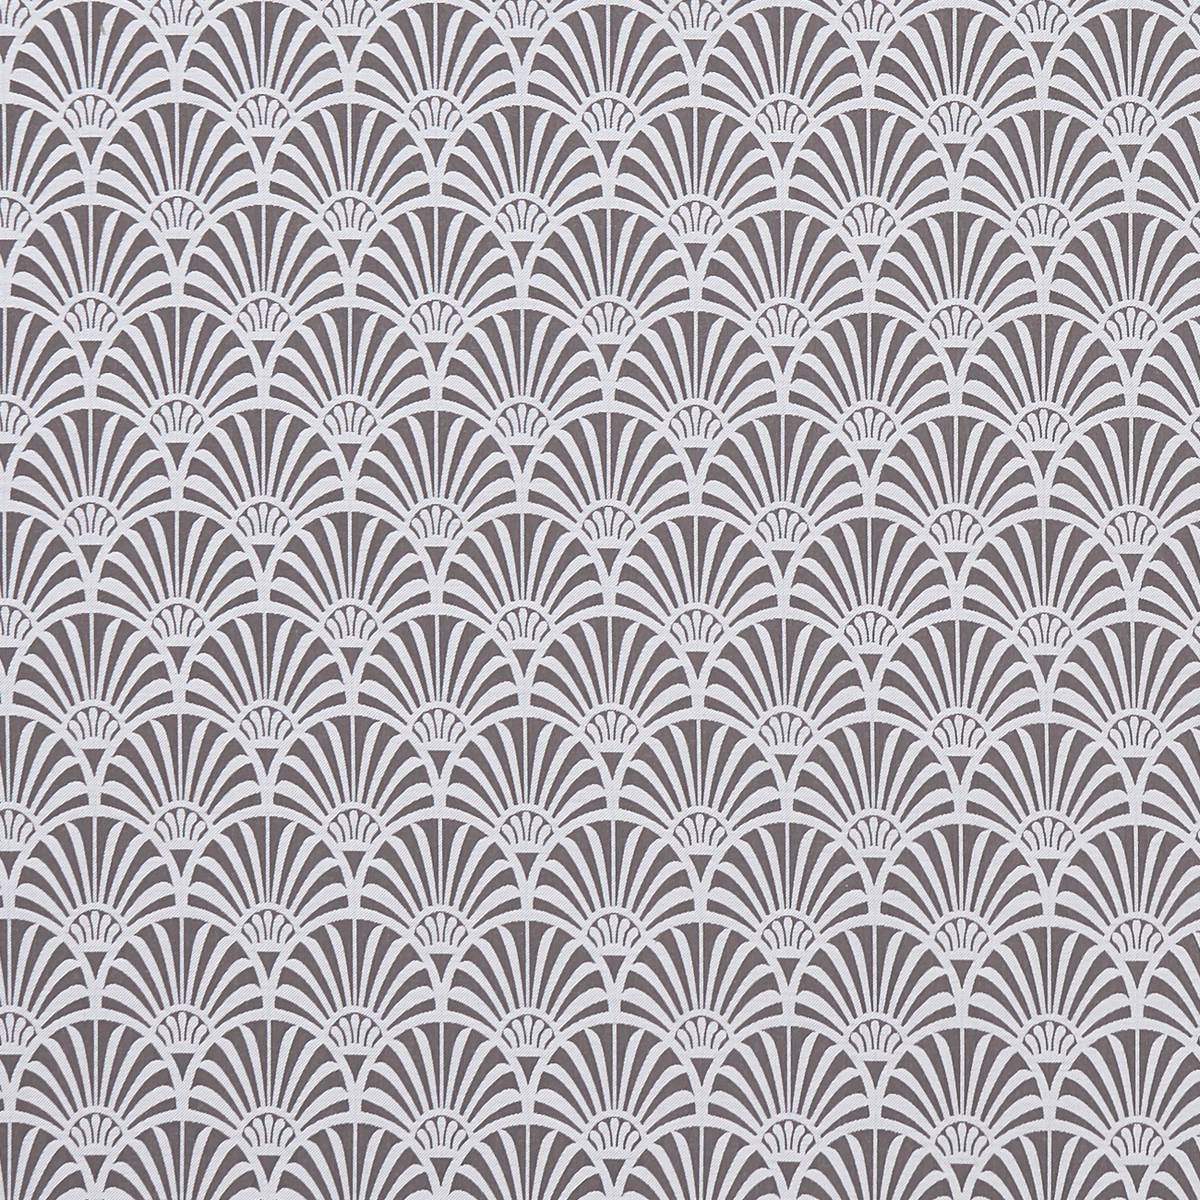 Zellige Charcoal Fabric by Clarke & Clarke